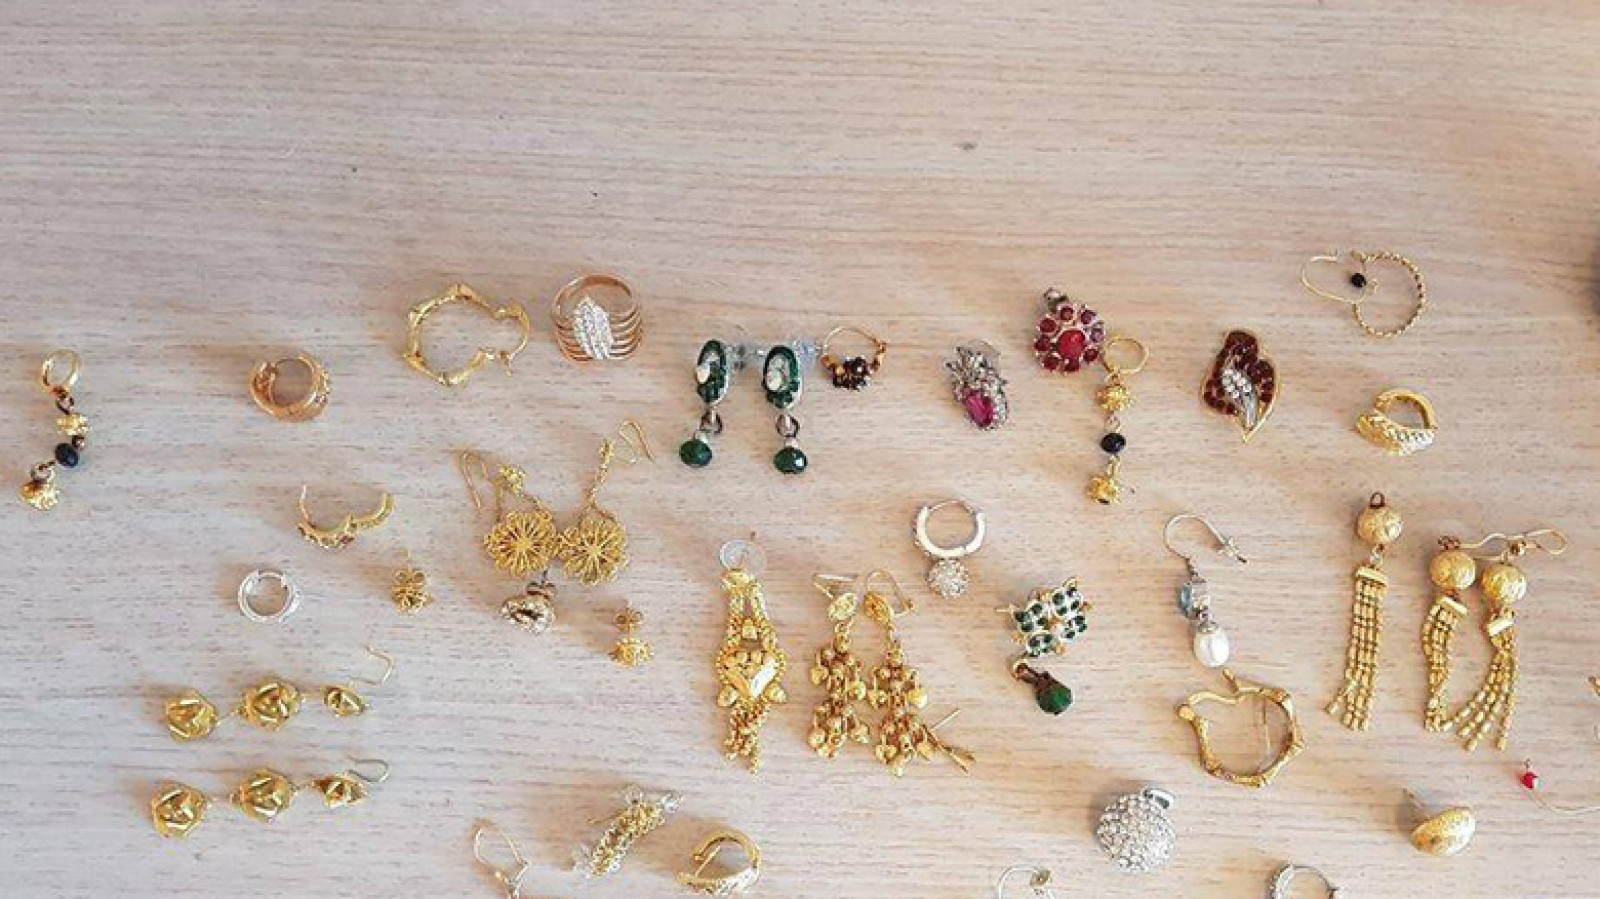 wenkbrauw Voorkeursbehandeling Moeras Grote partij sieraden gevonden in Amsterdam: politie zoekt eigenaren - NH  Nieuws